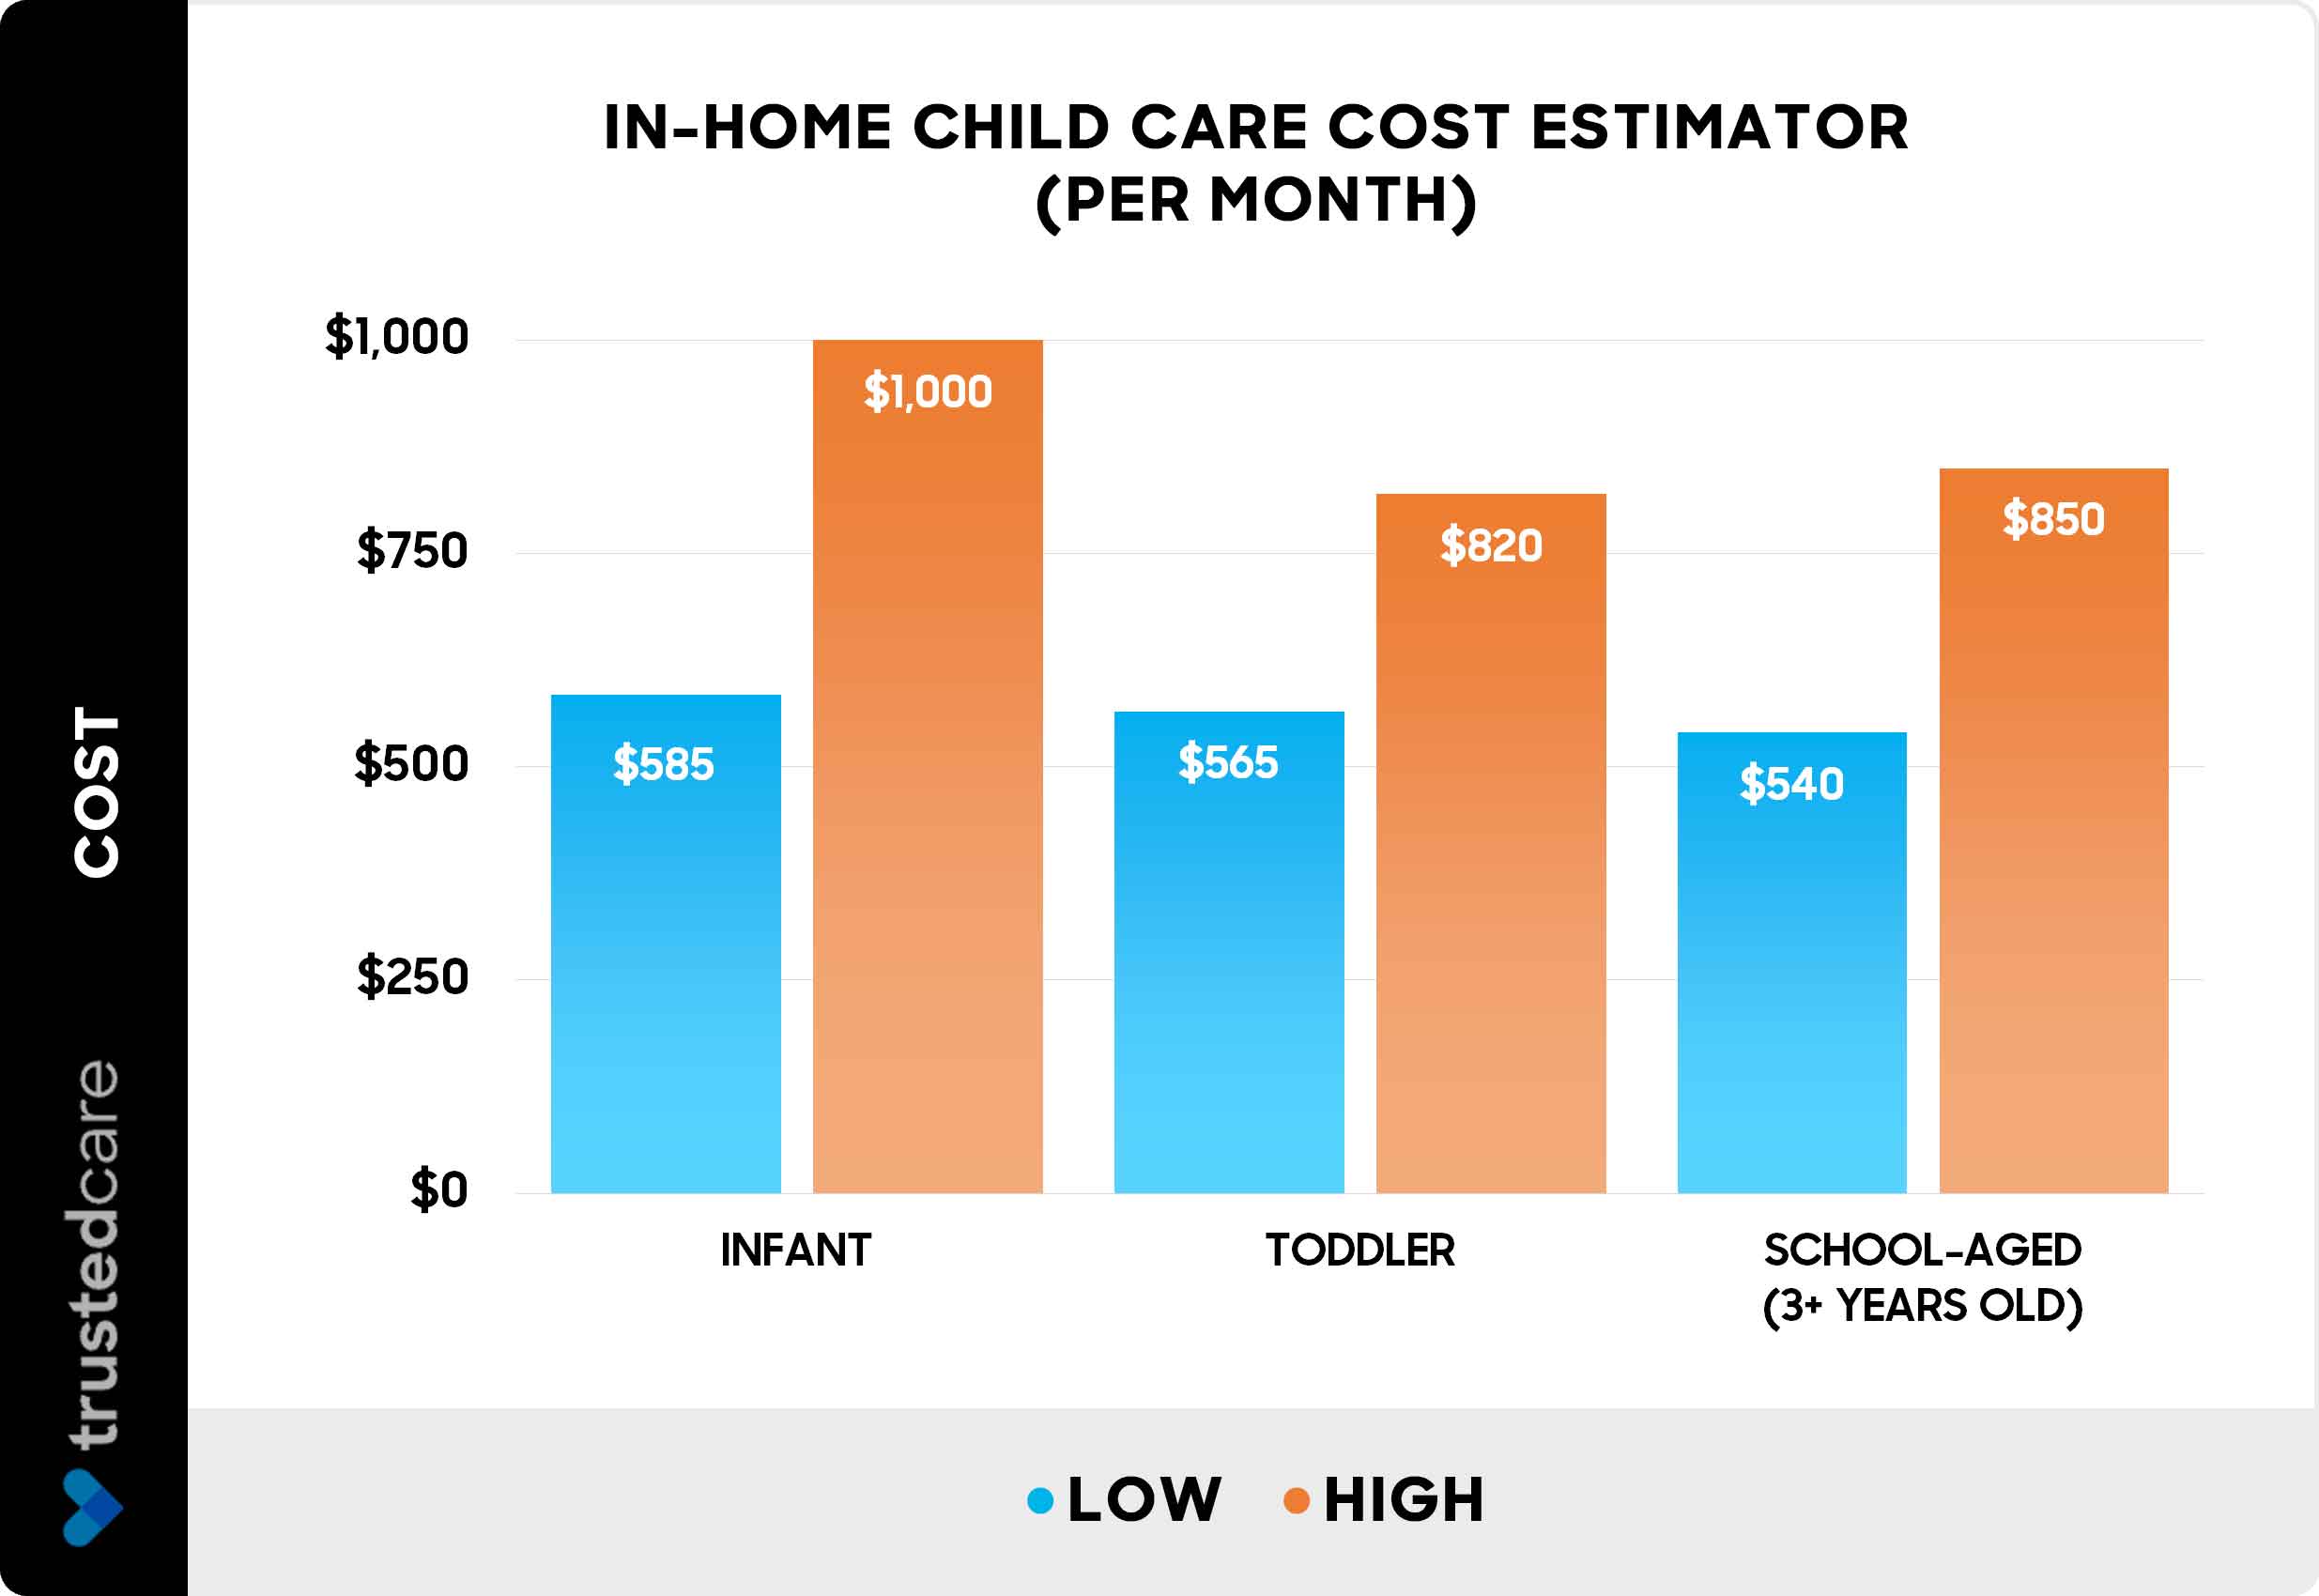 In-home child care cost estimator - chart